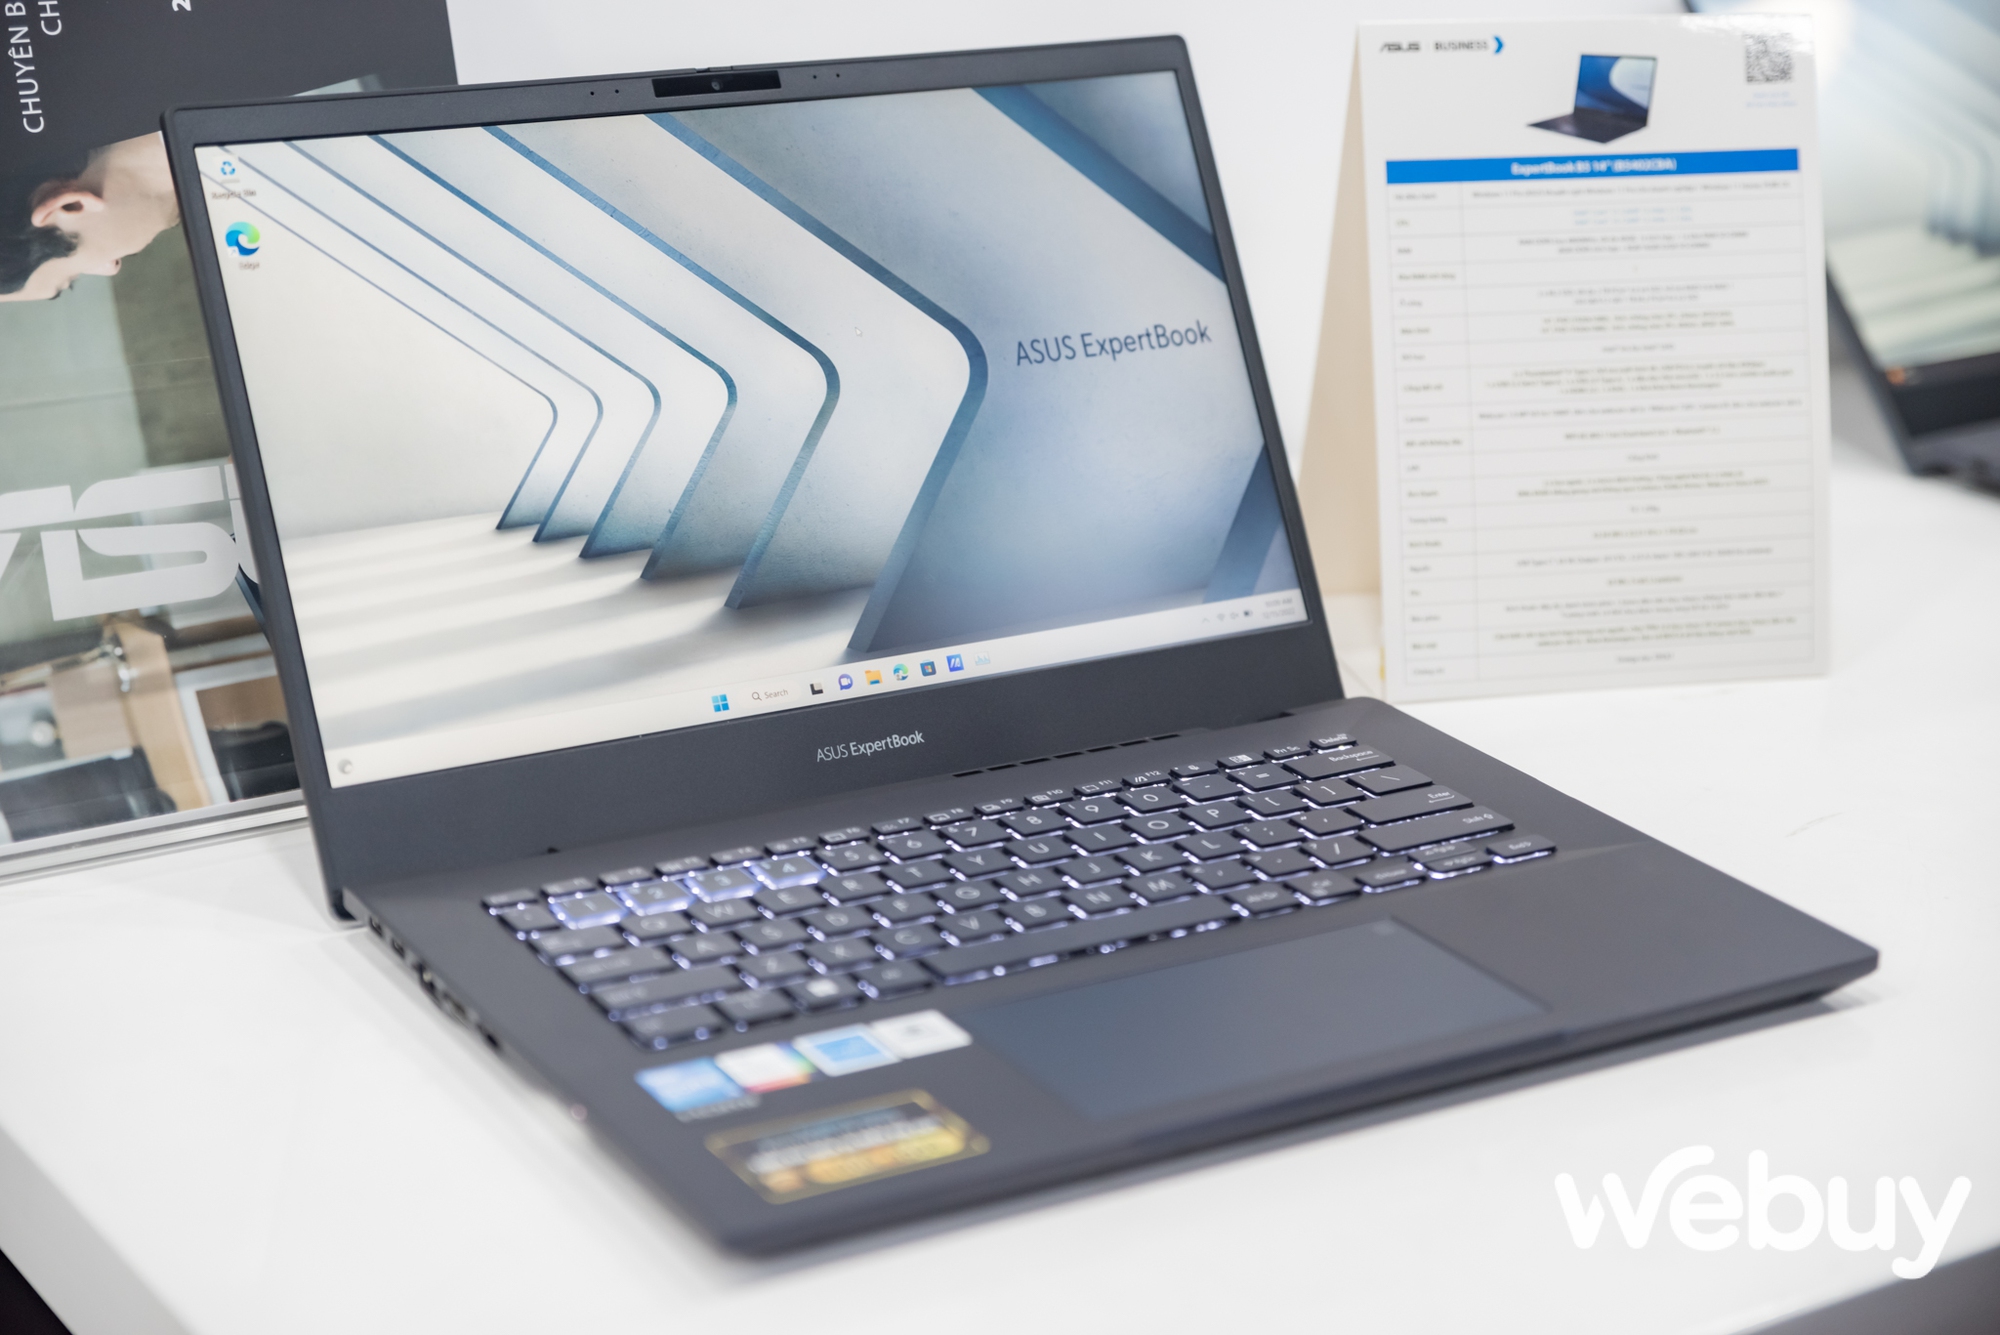 ASUS giới thiệu loạt laptop ExpertBook thế hệ mới, đa dạng lựa chọn hướng đến đối tượng khách hàng doanh nghiệp - Ảnh 11.